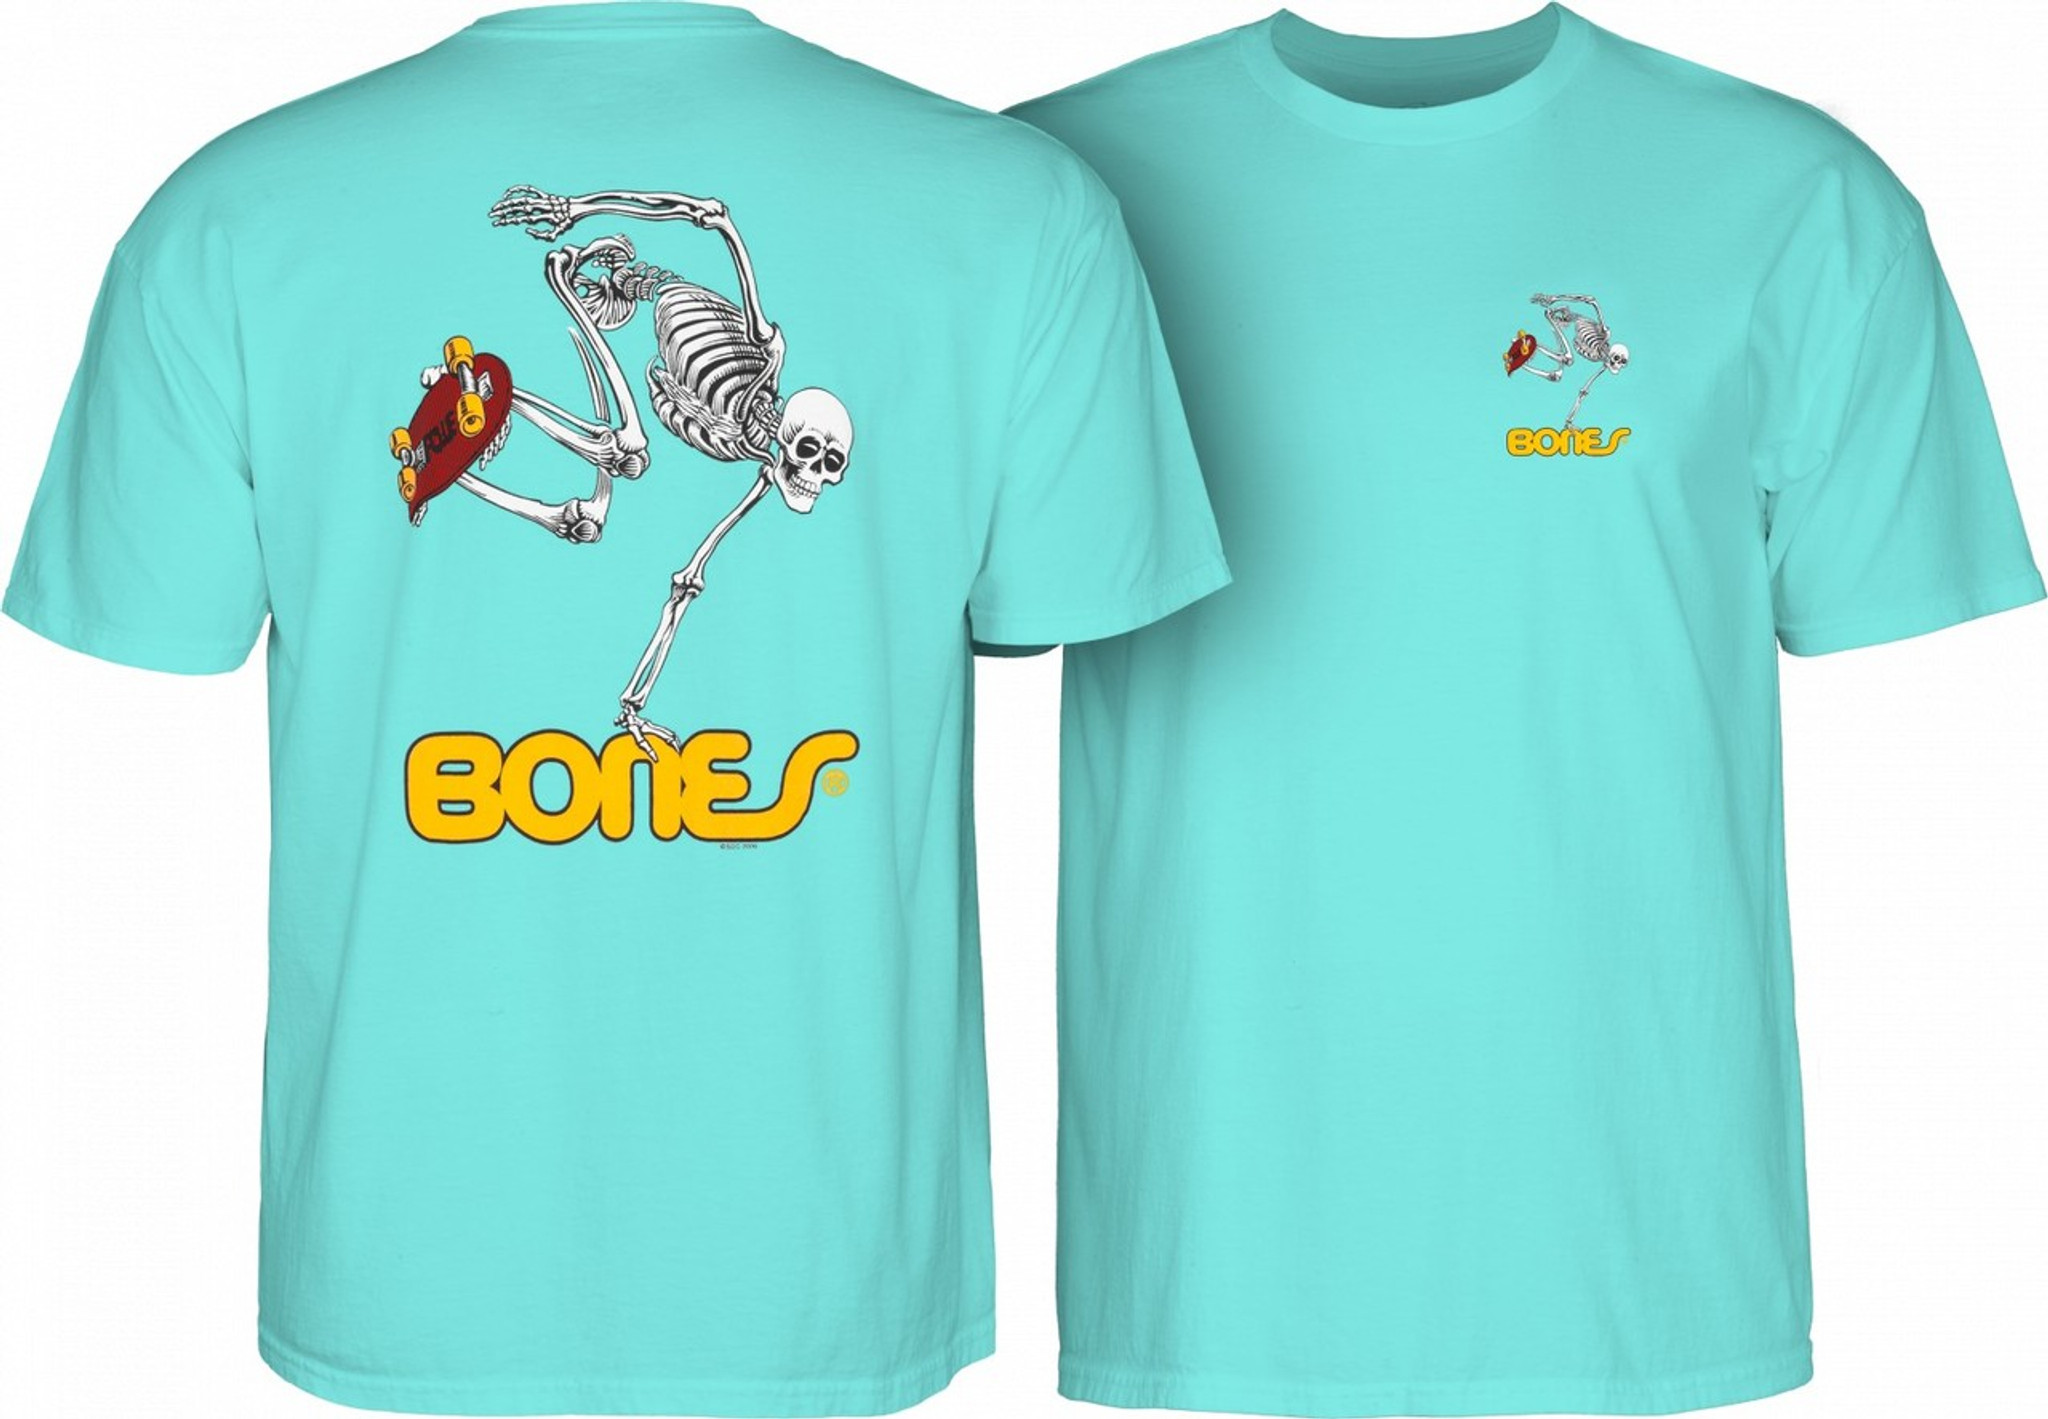 Powell Peralta Skateboarding Skeleton T-Shirt (Teal Ice)